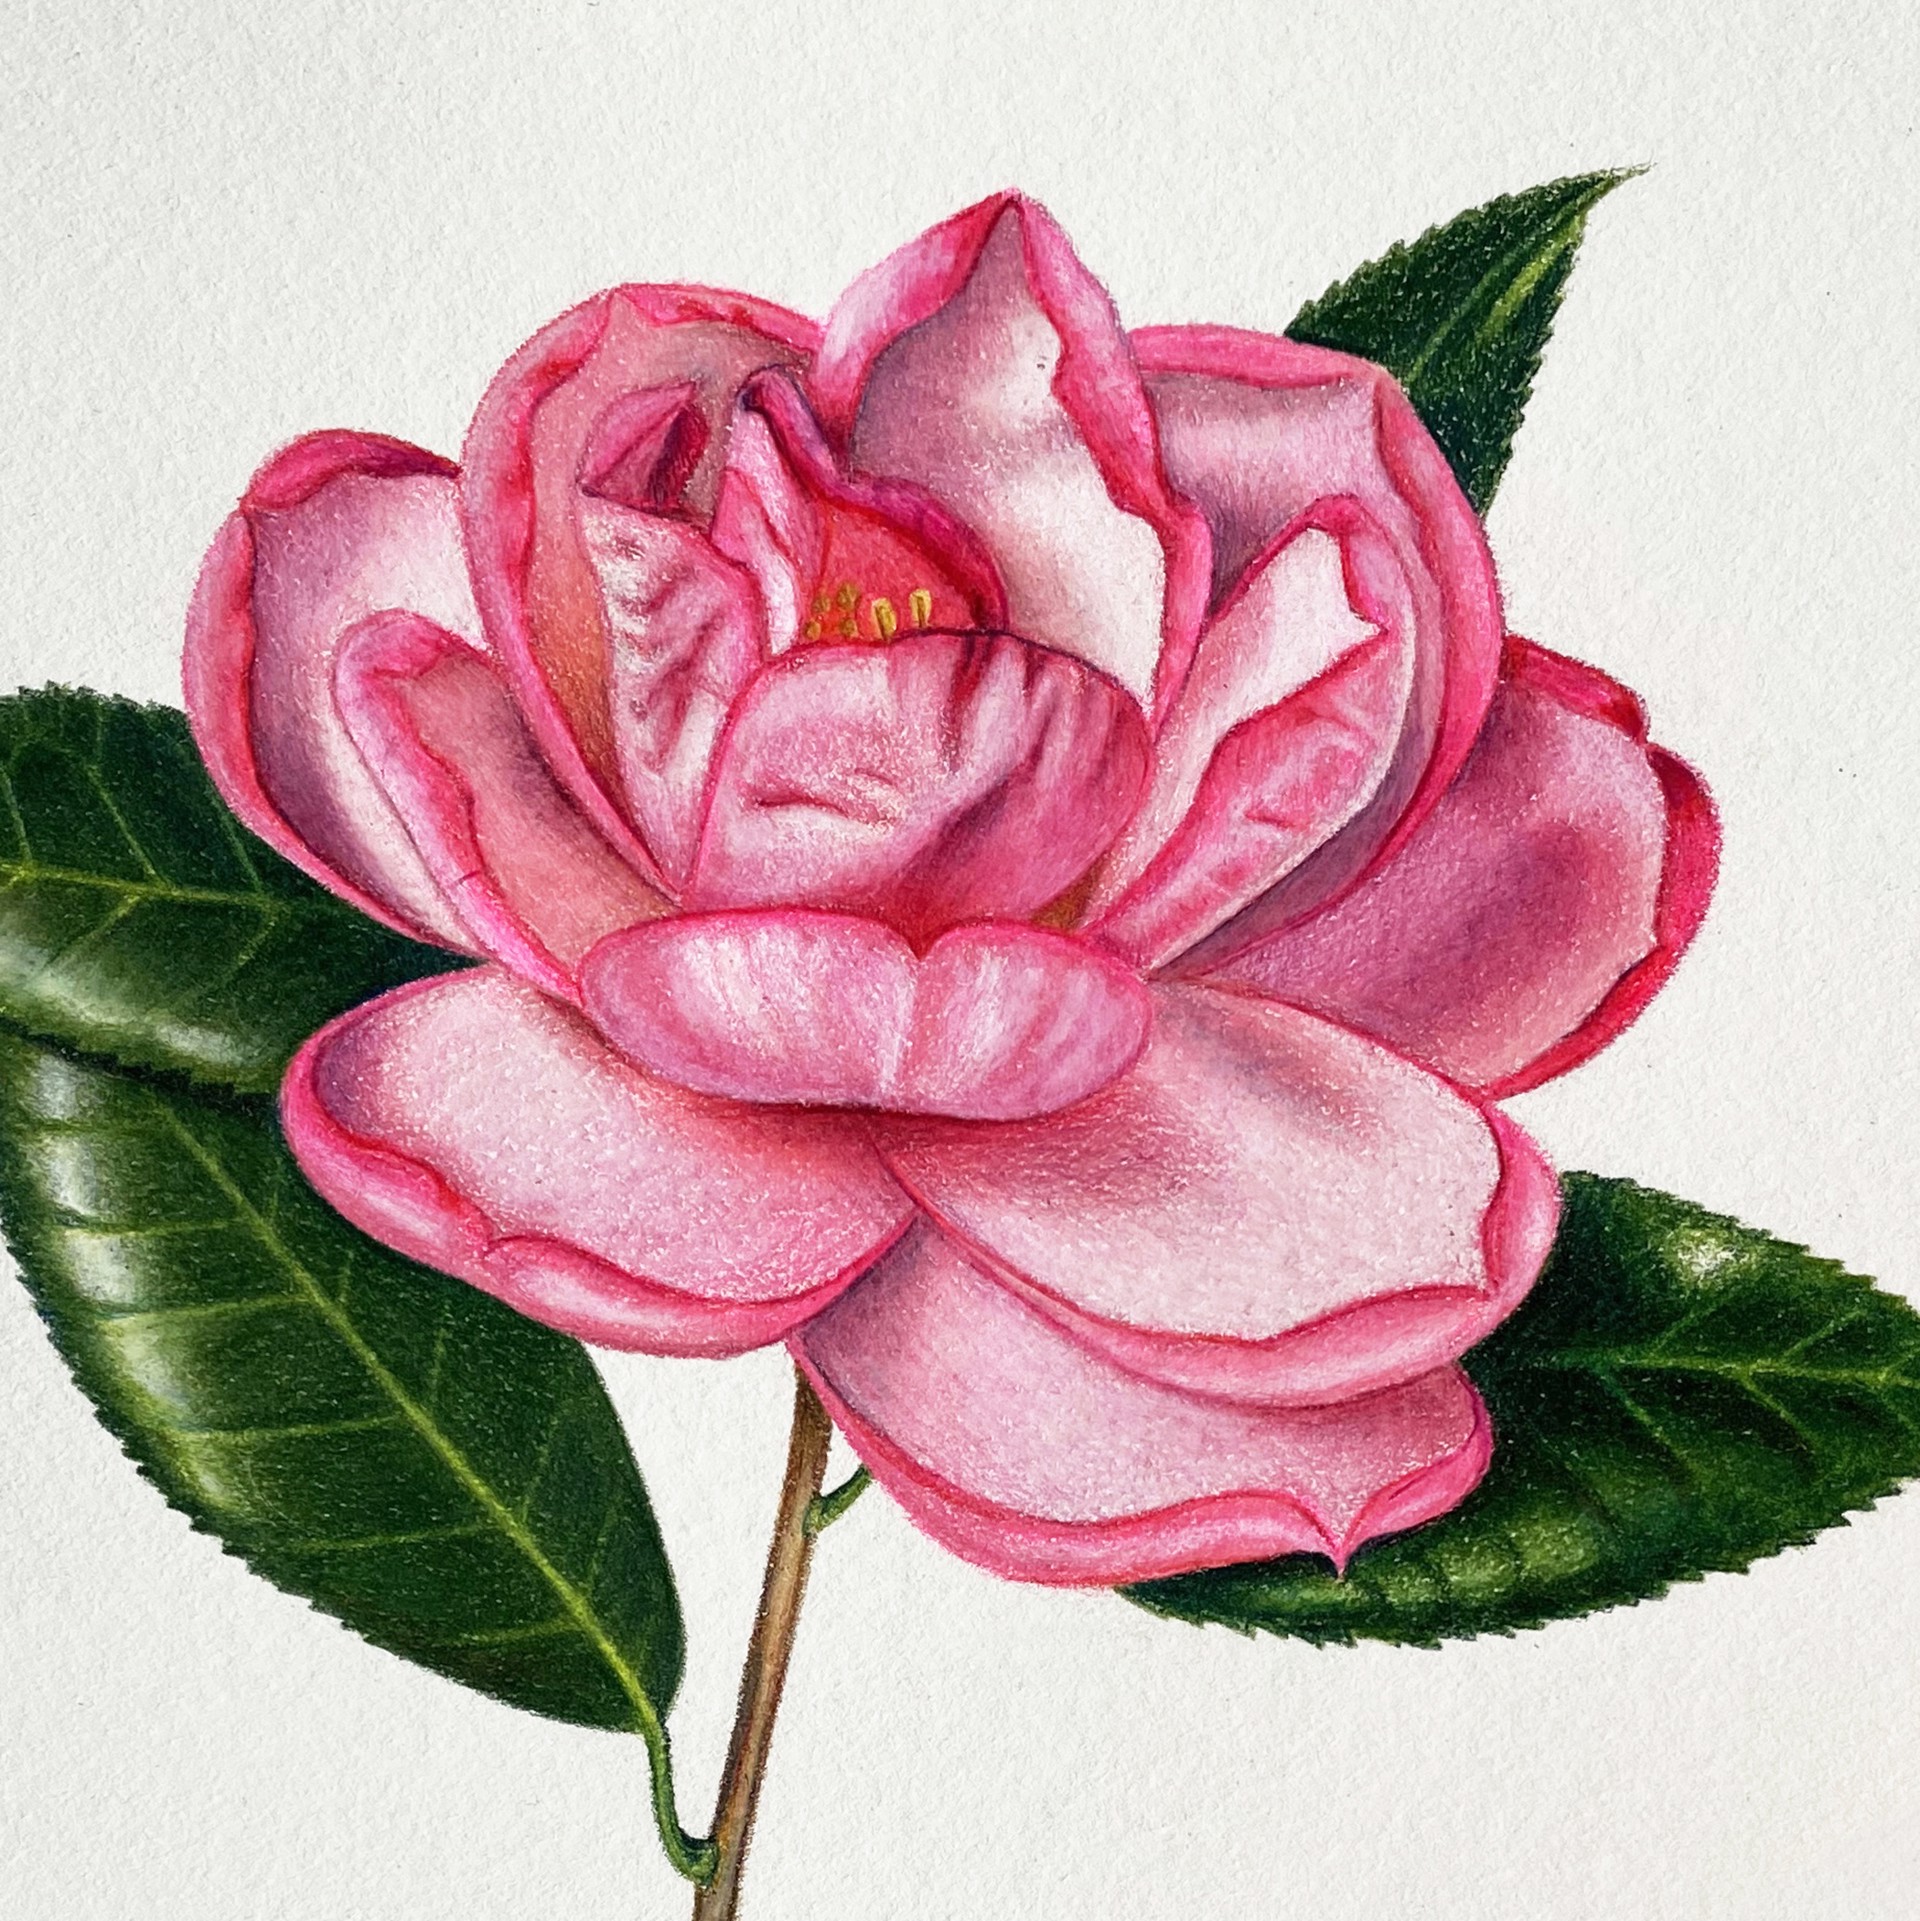 Camellia with Ladybug by Hannah Hanlon